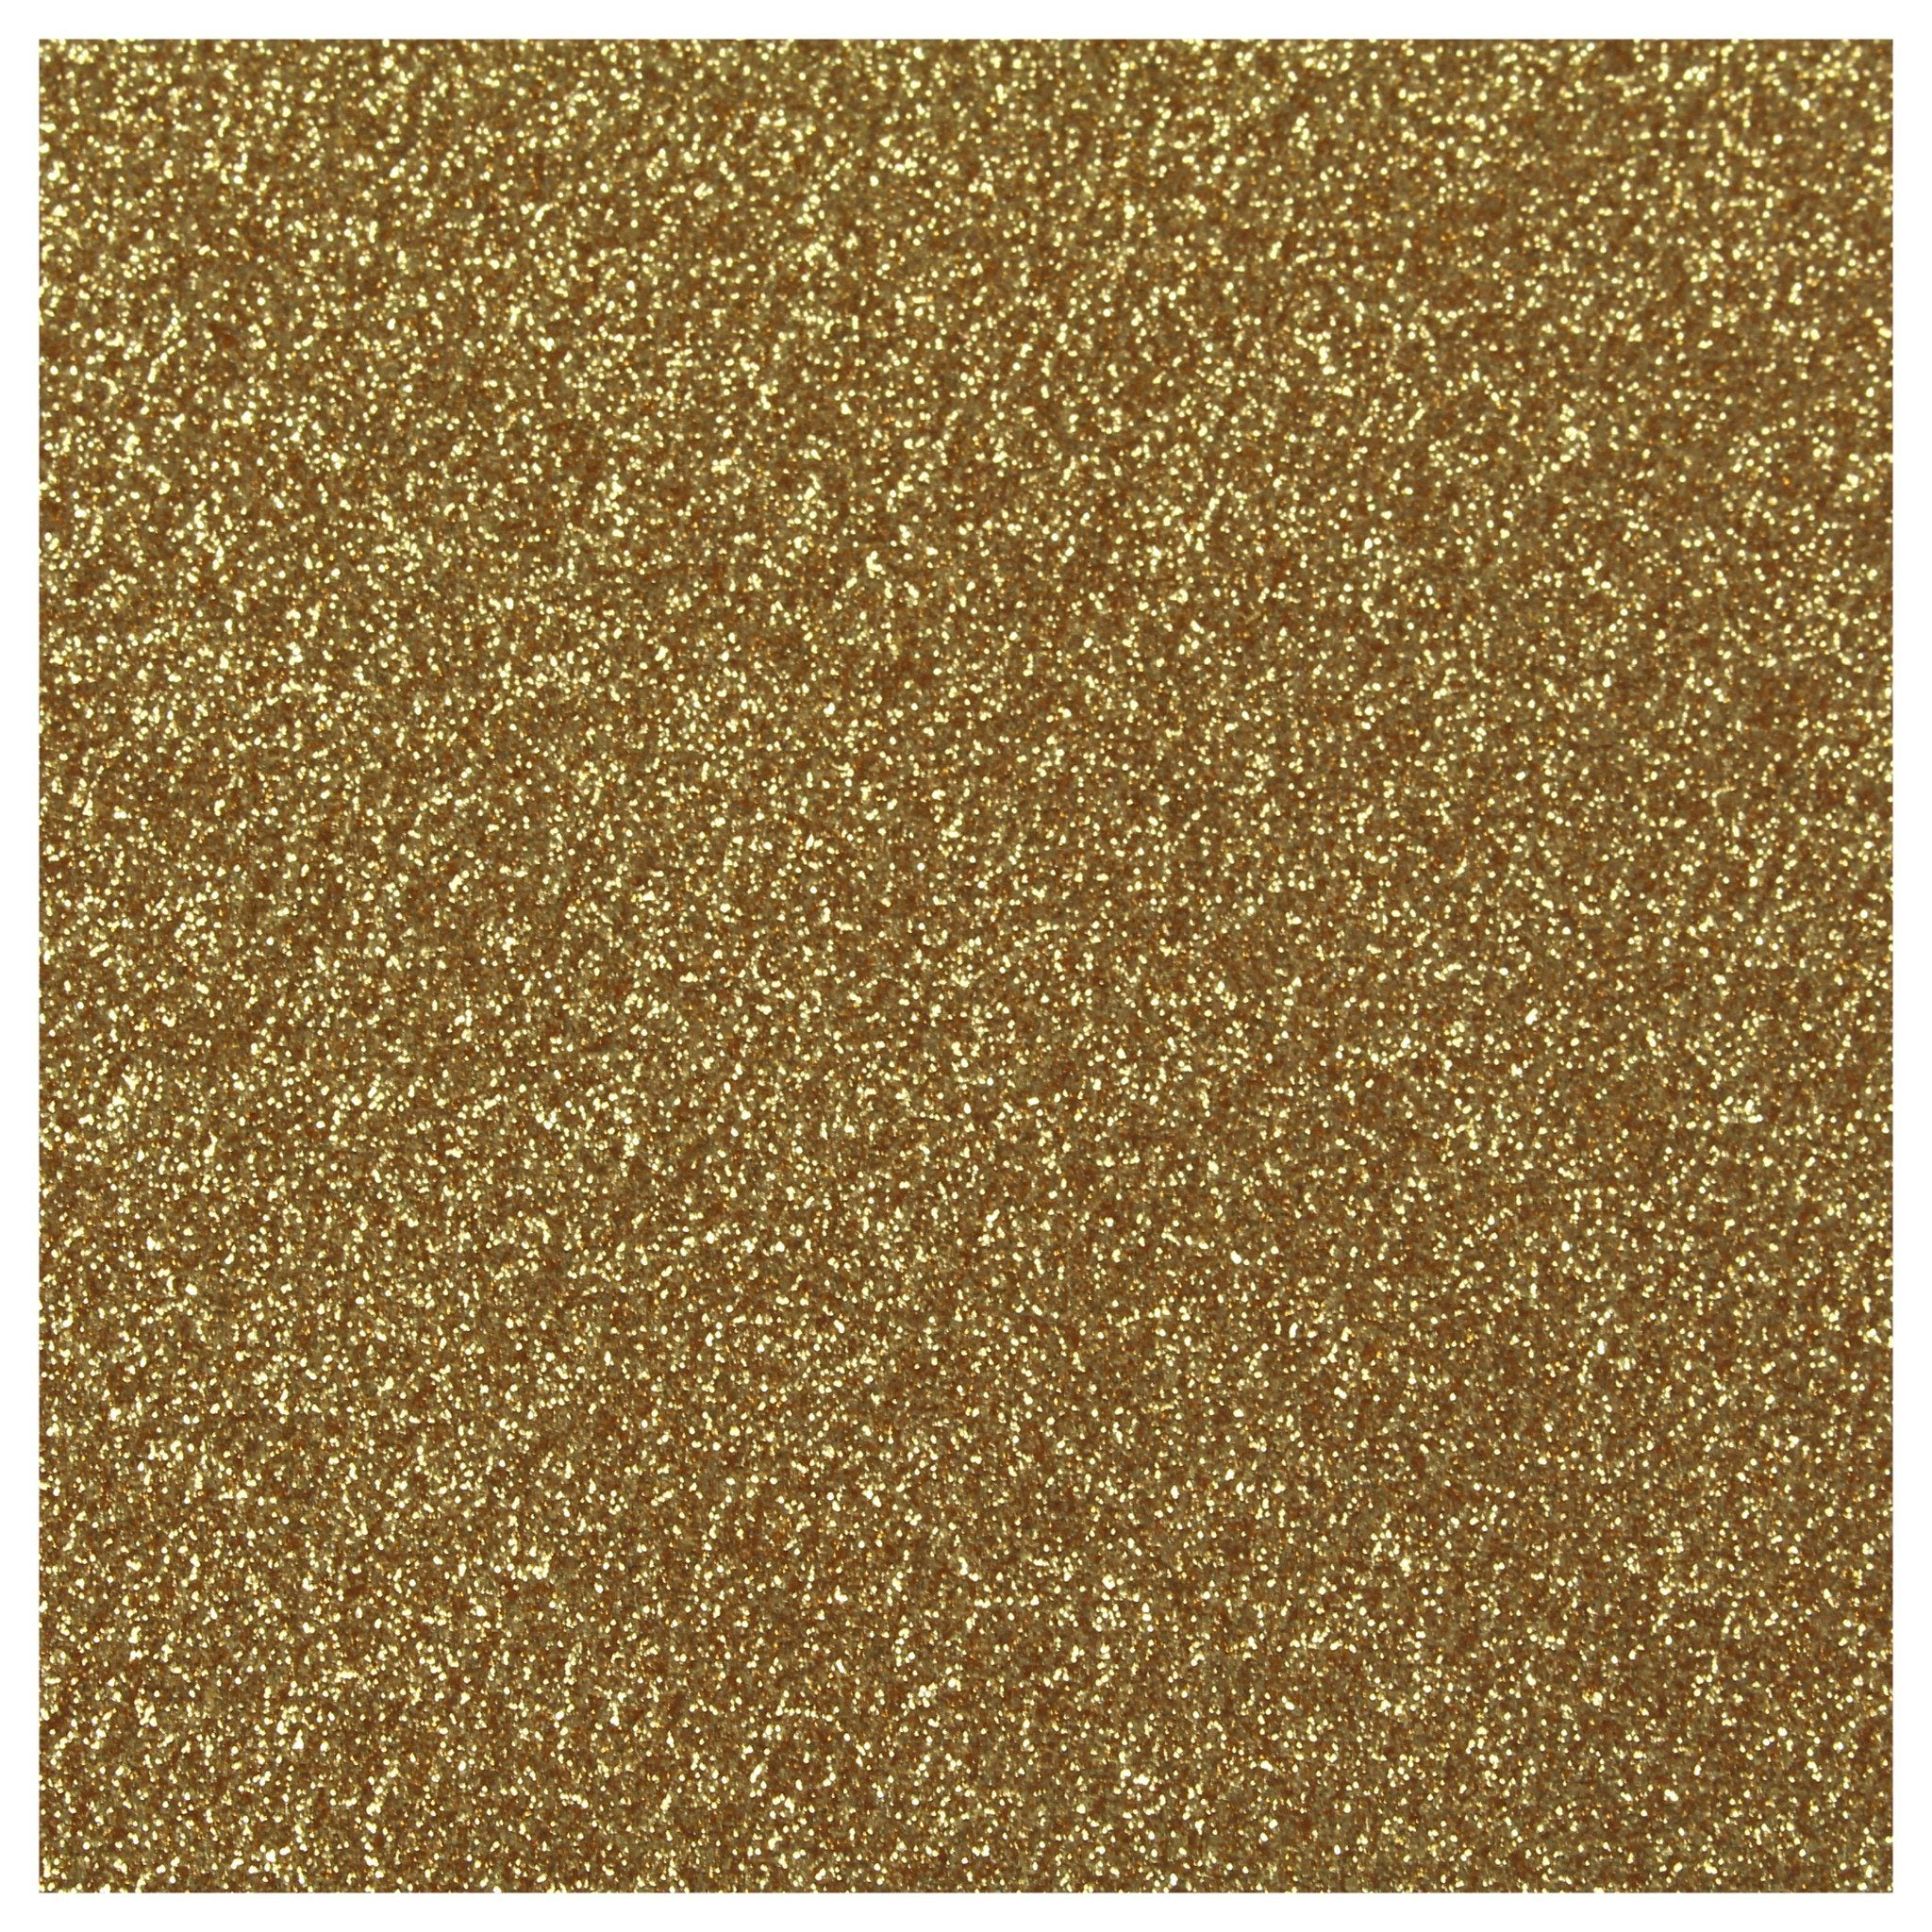 Siser Glitter Heat Transfer Vinyl (HTV) - Old Gold